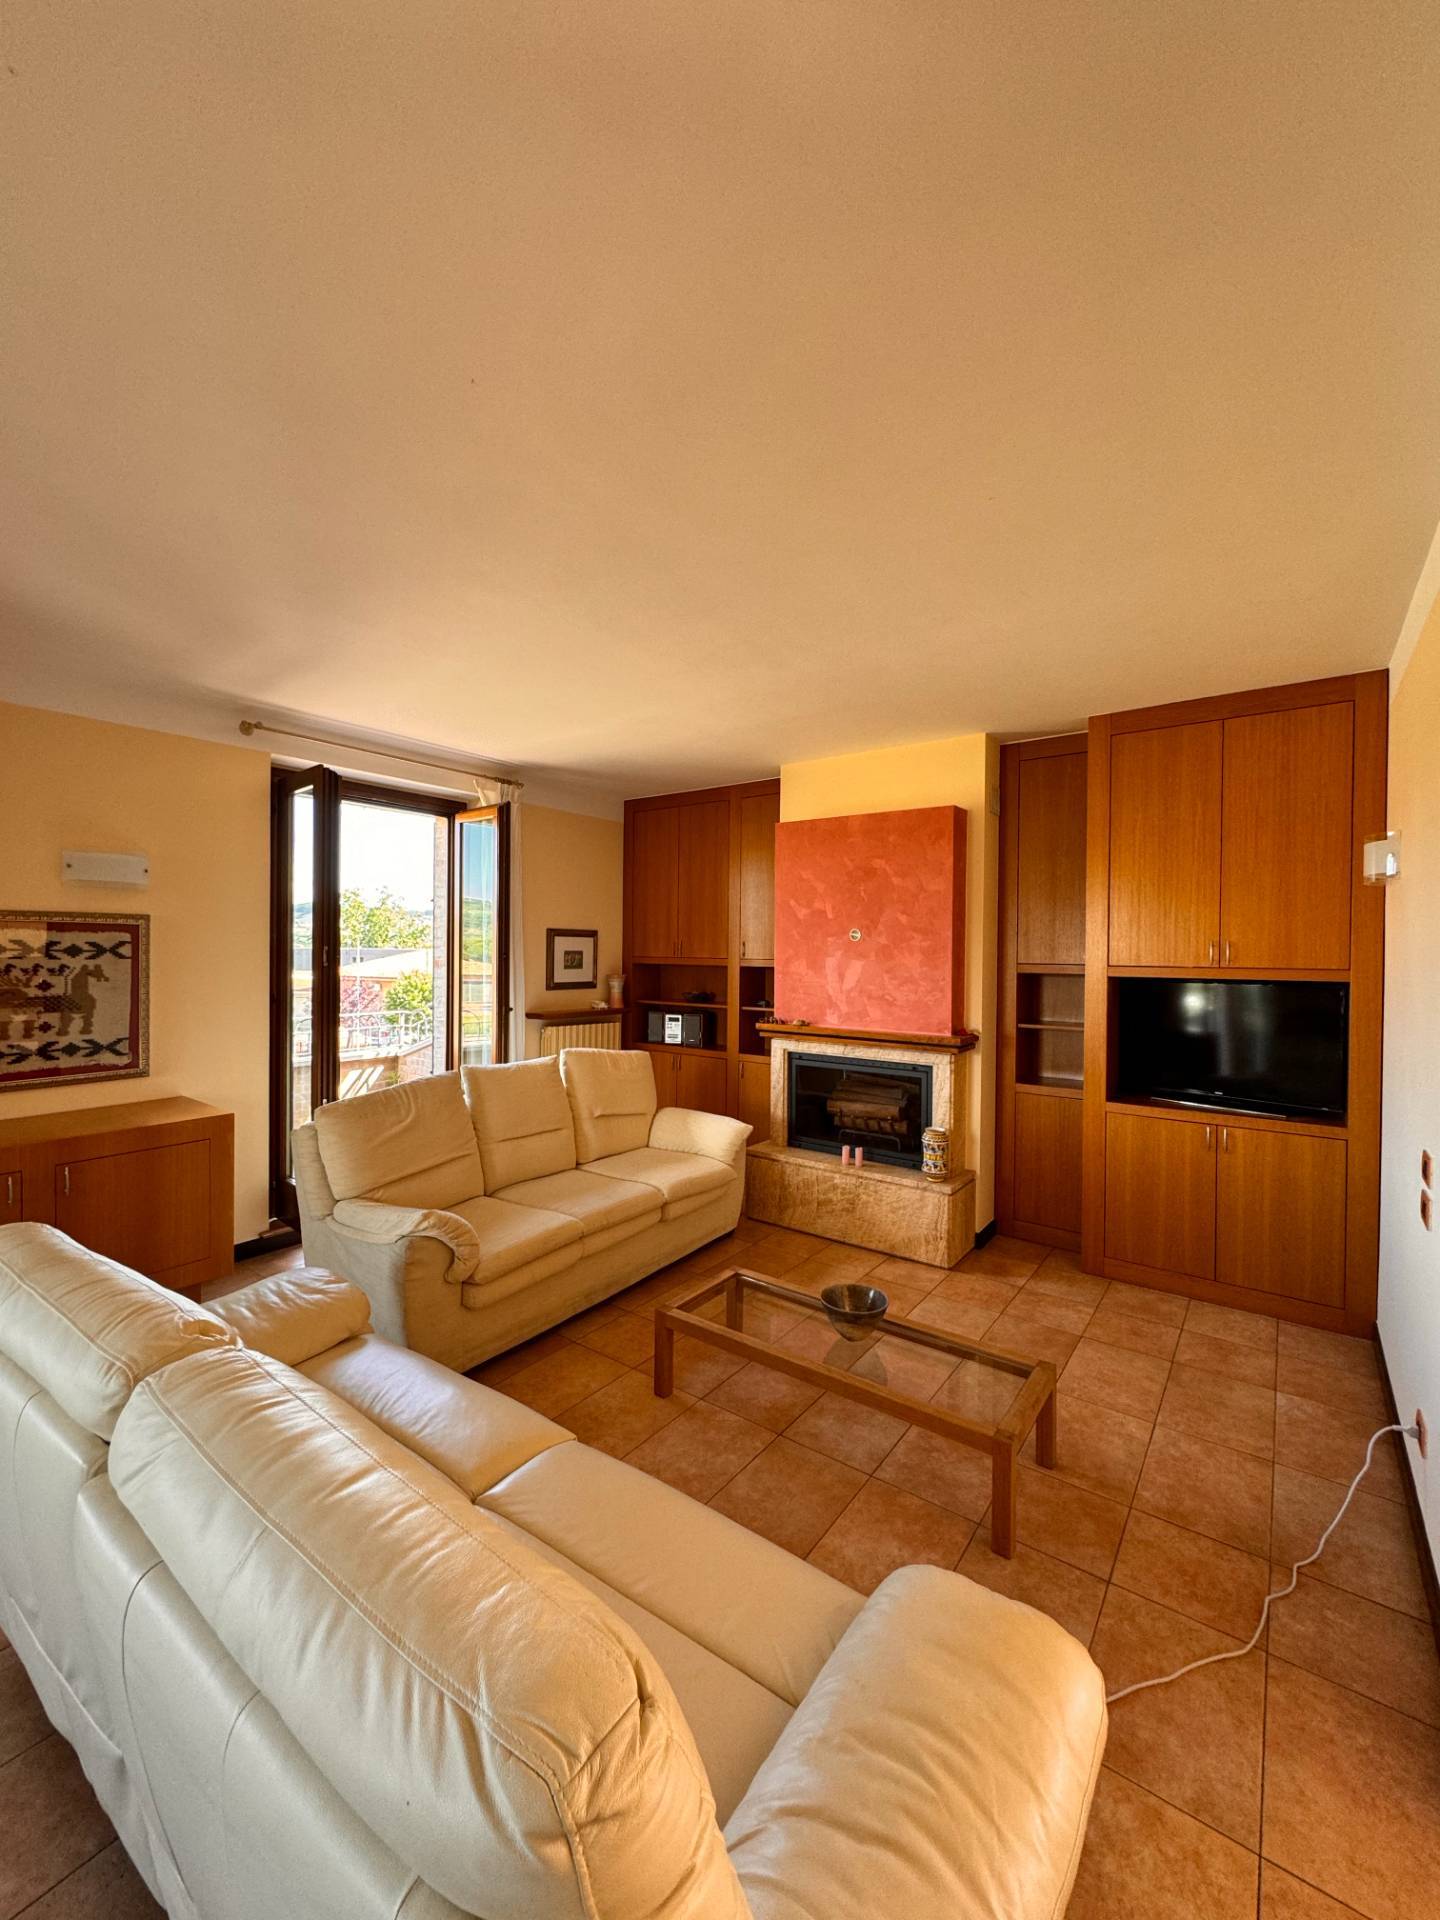 Foto - Appartamento In Vendita Servigliano (fm)